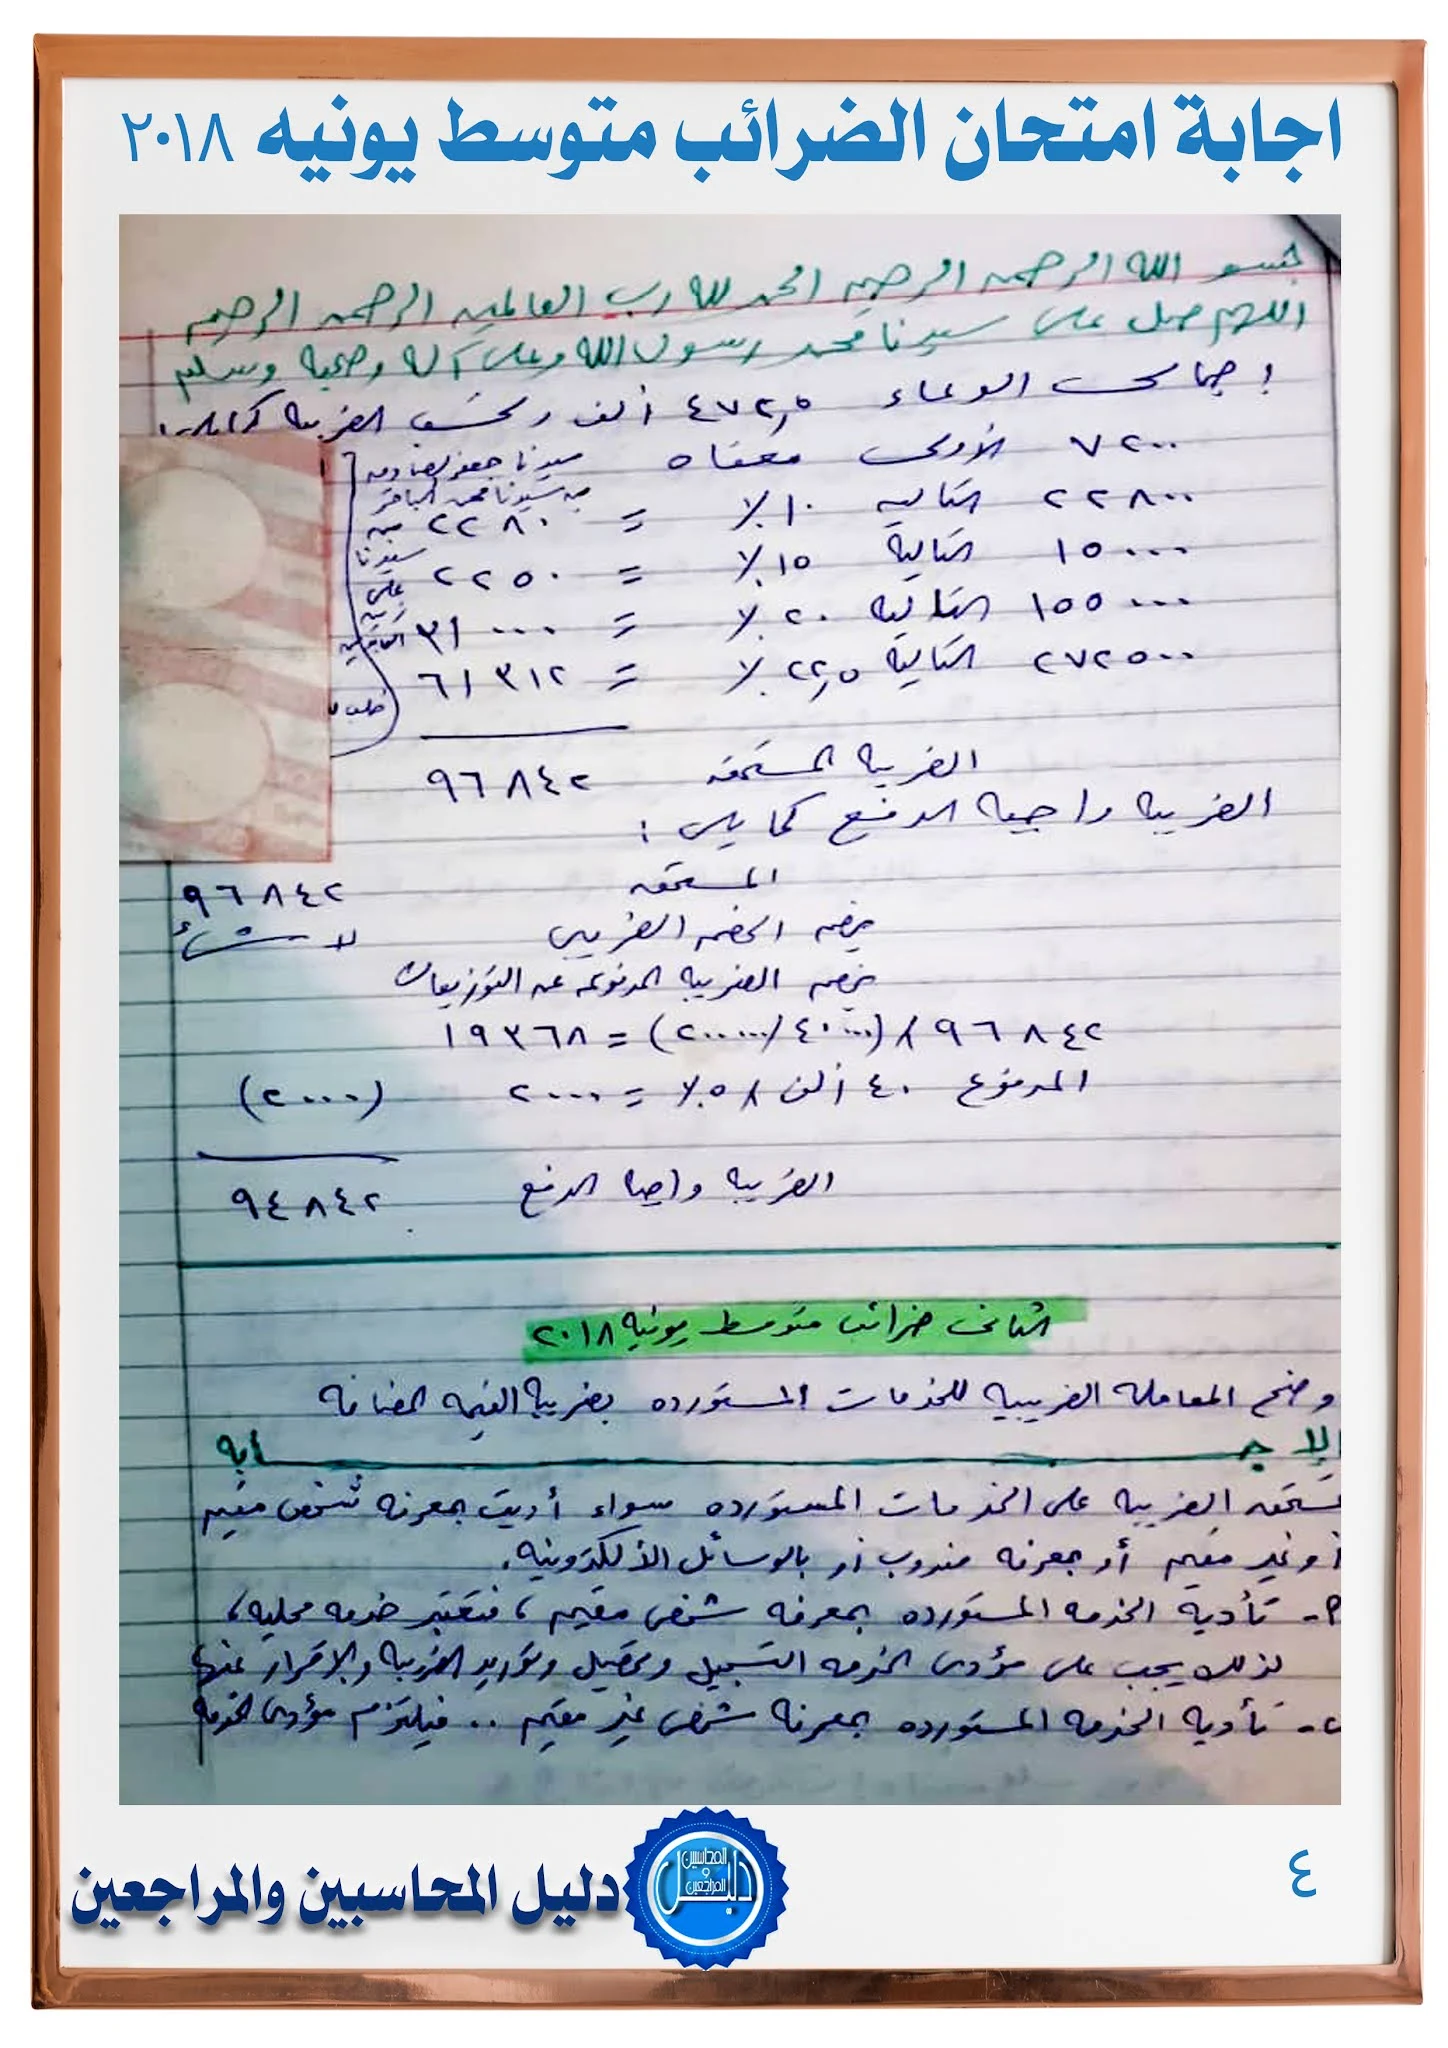 اجابة امتحان الضرائب للمستوي المتوسط  يونيو 2018 جمعية المحاسبين والمراجعين المصرية